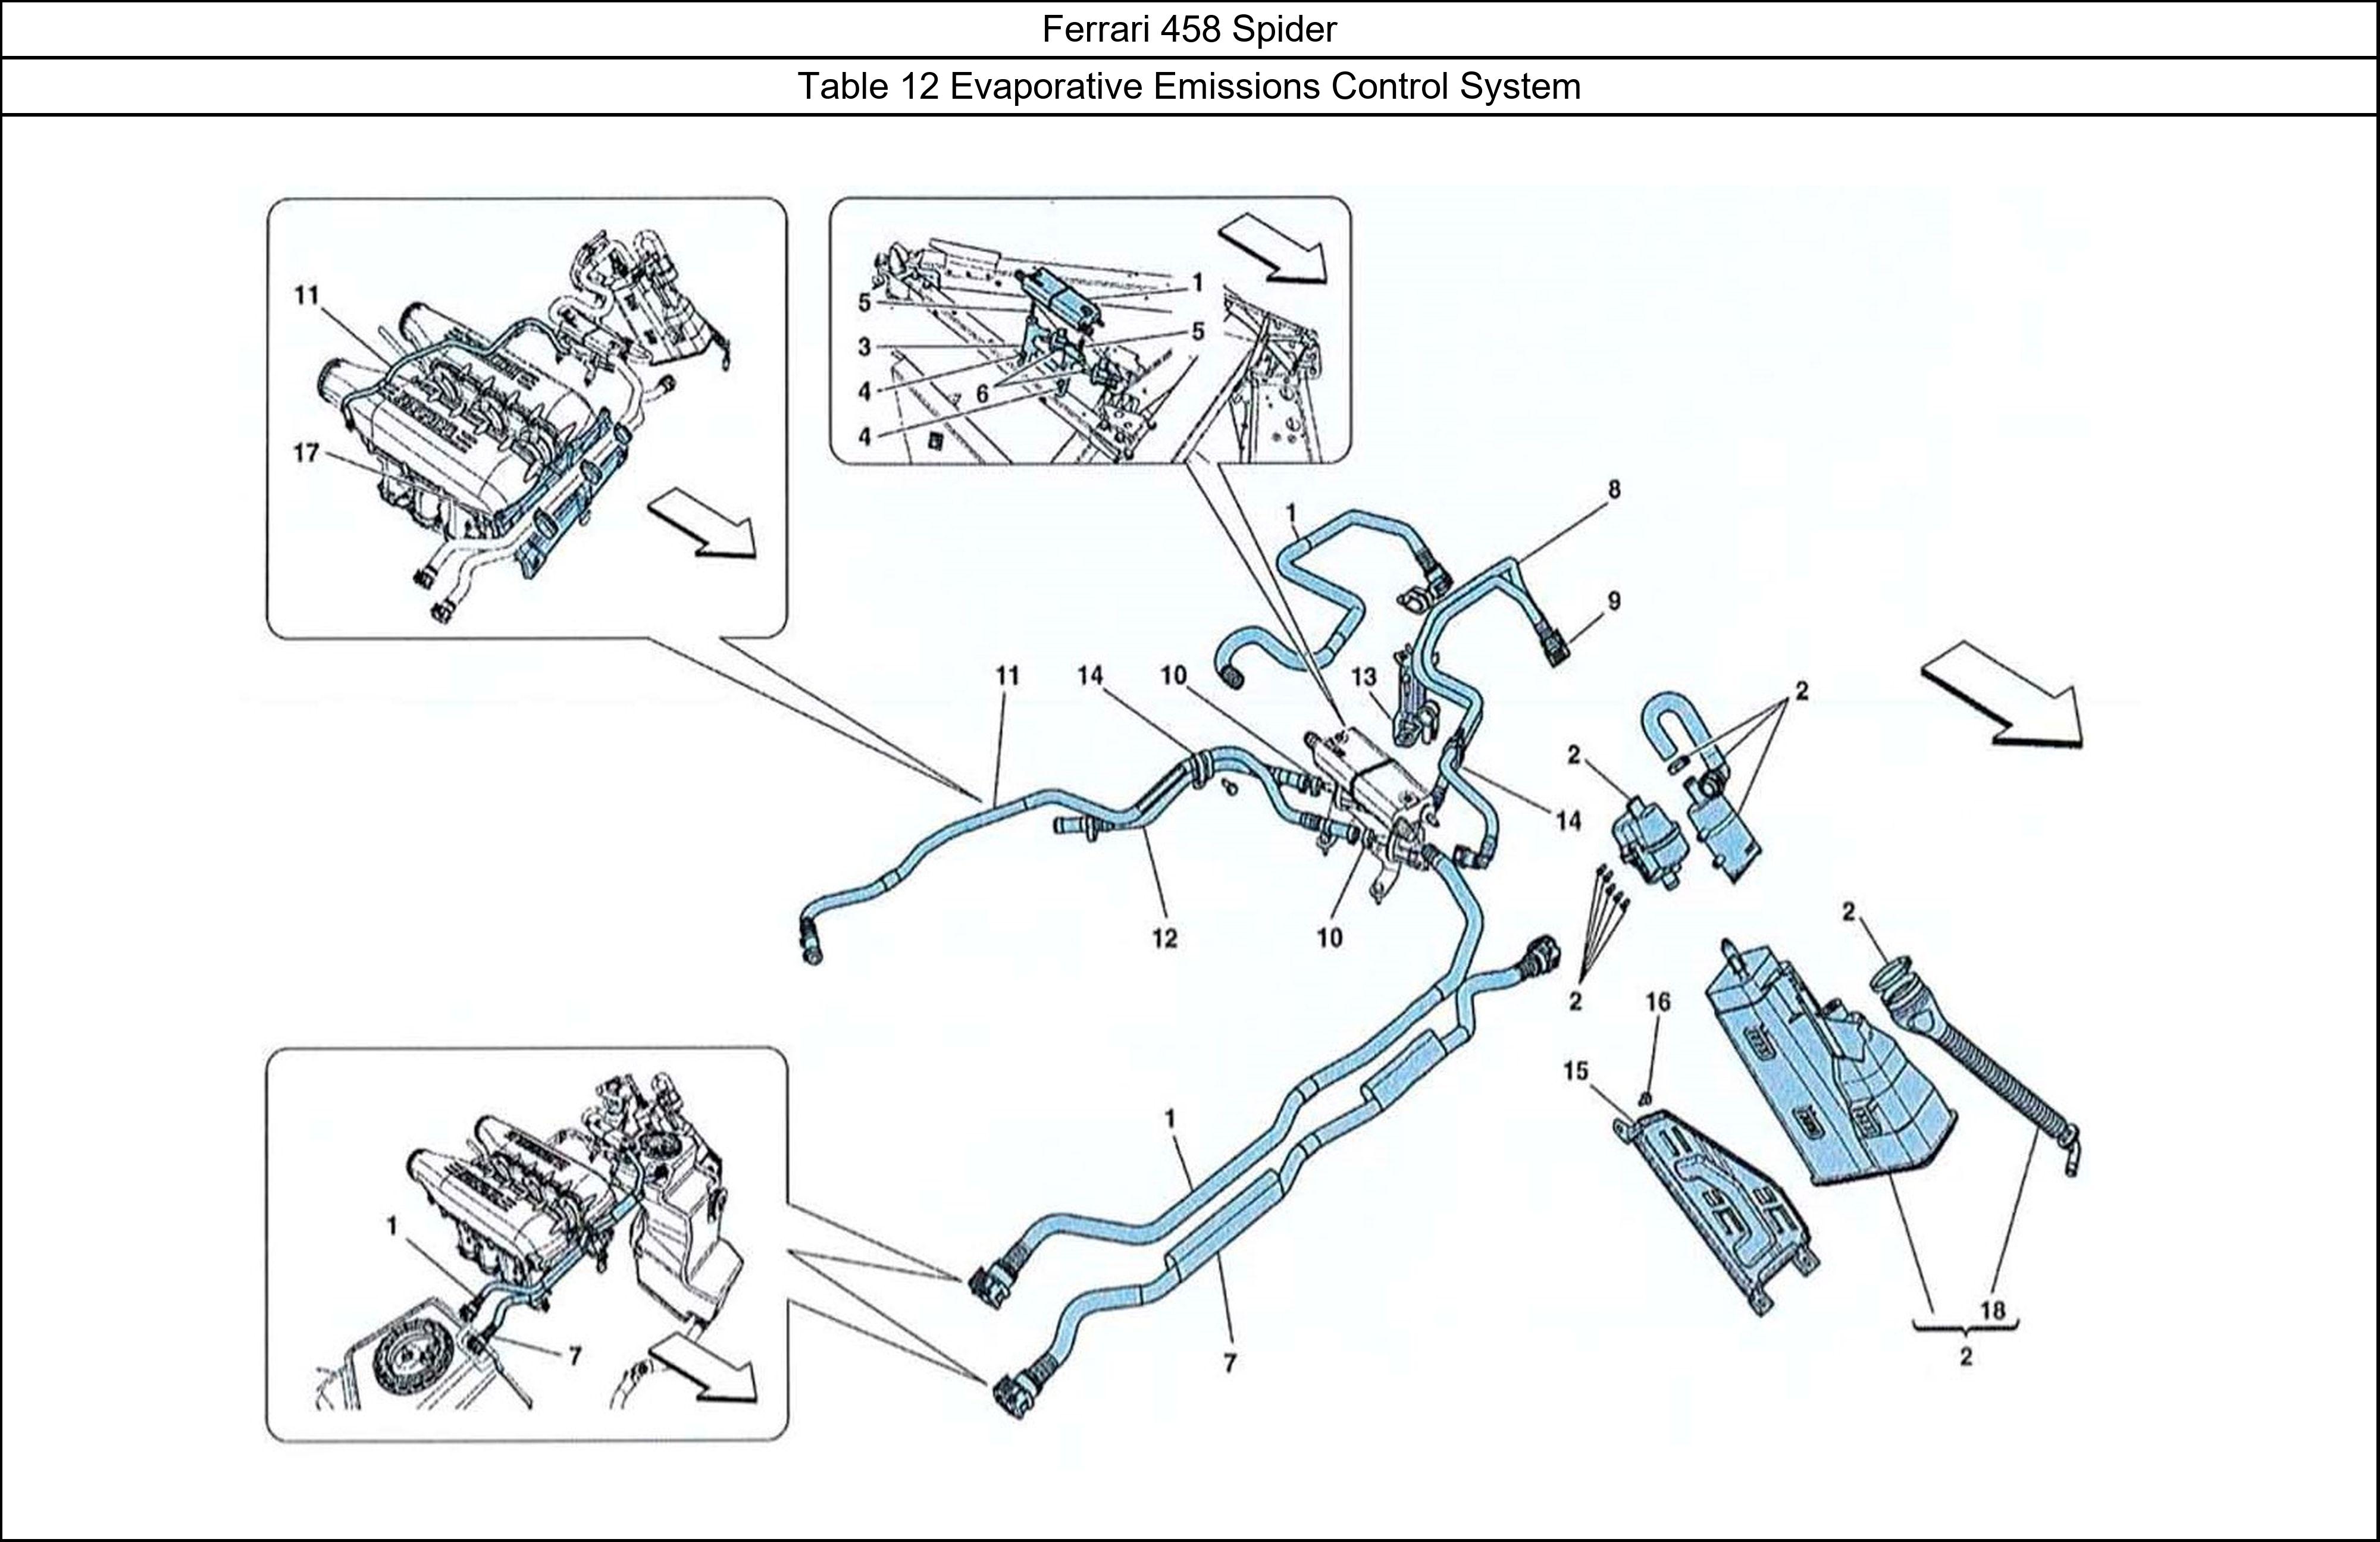 Ferrari Parts Ferrari 458 Spider Table 12 Evaporative Emissions Control System